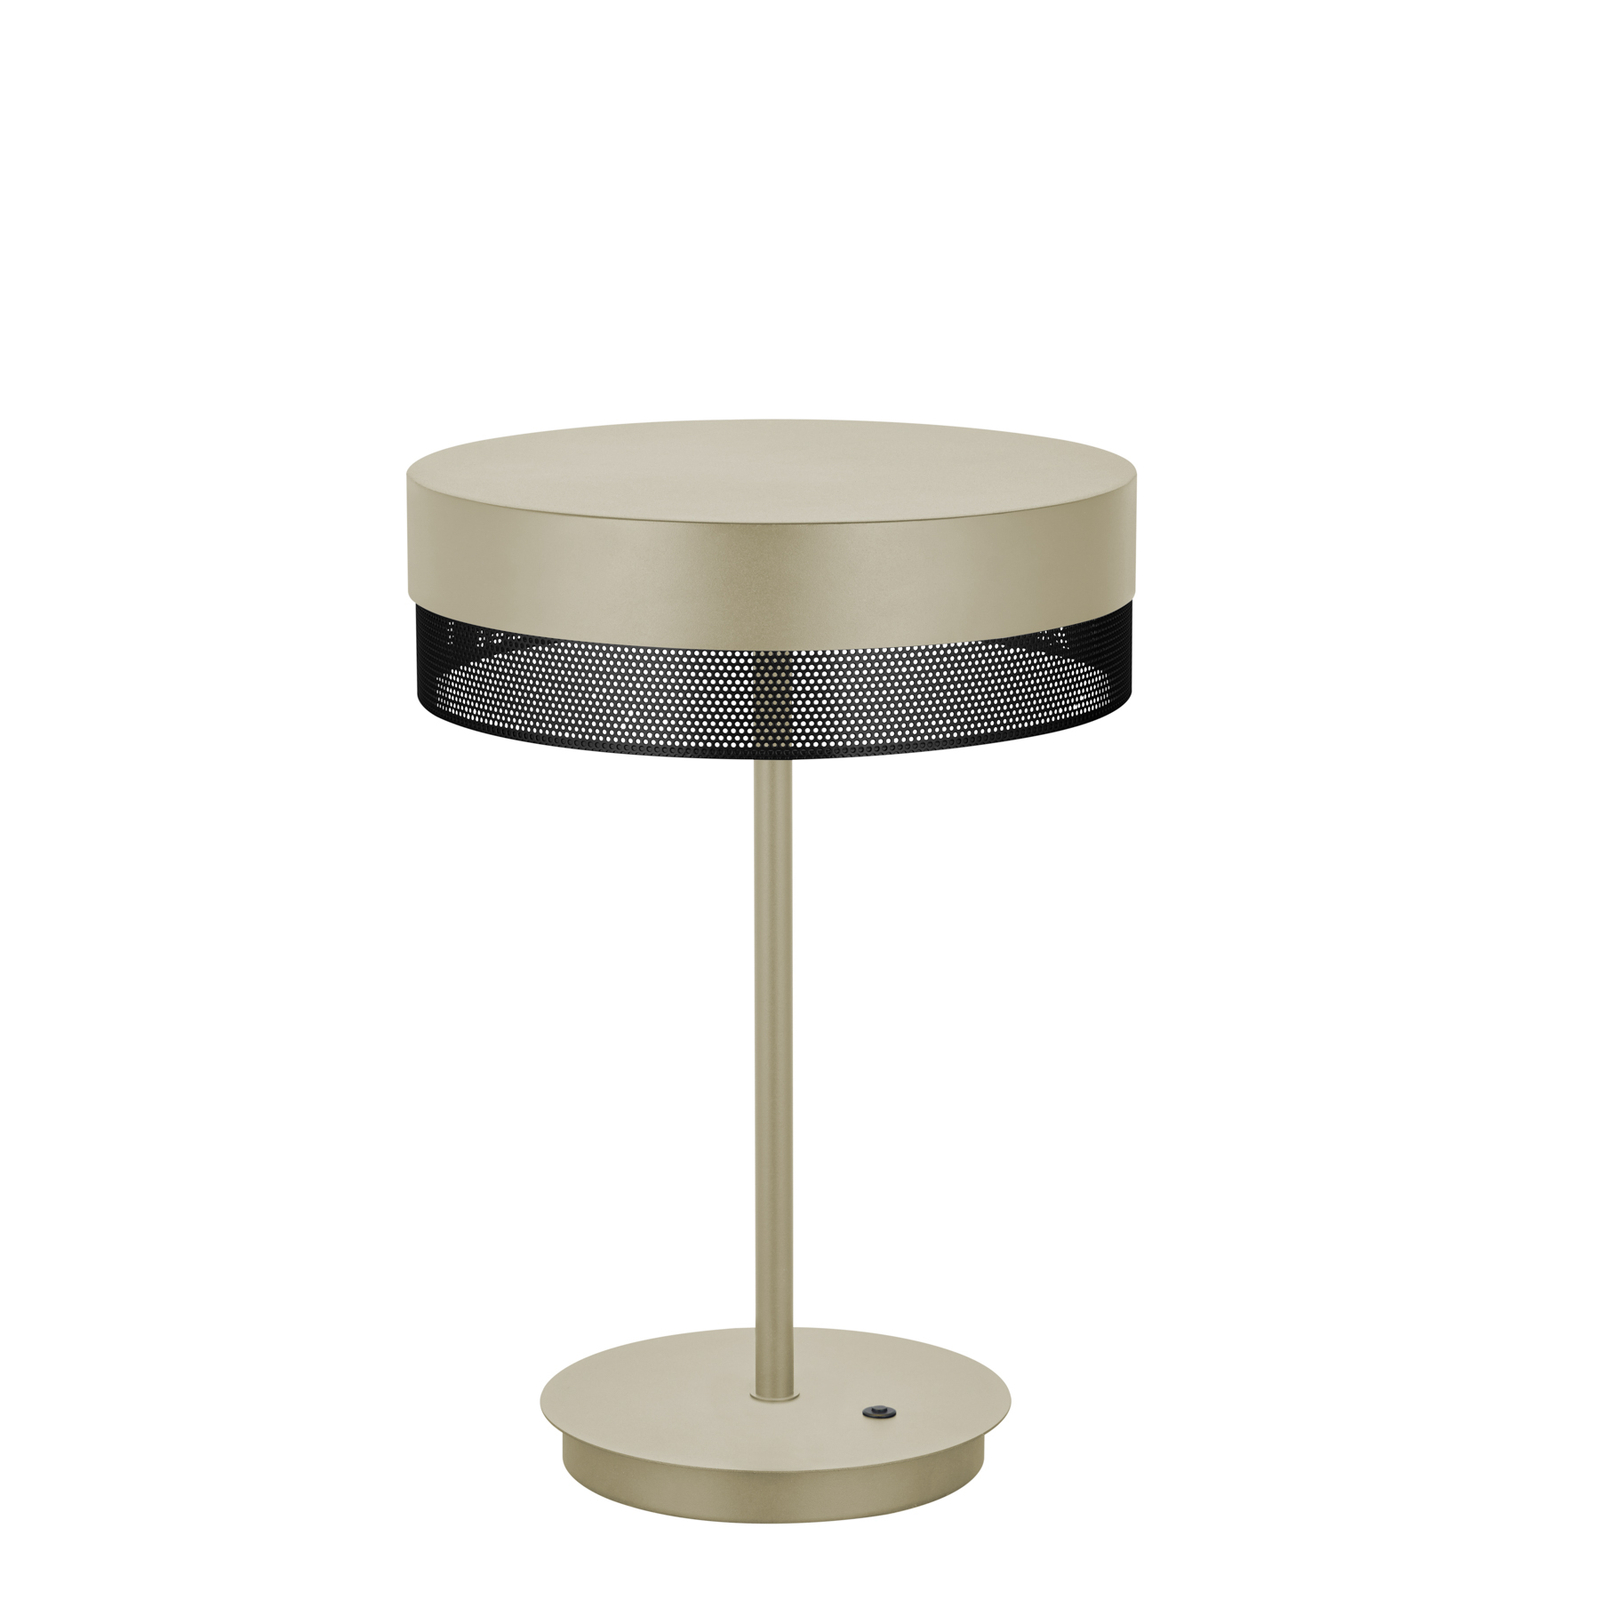 LED-bordlampe Mesh, høyde 43 cm, sand/svart